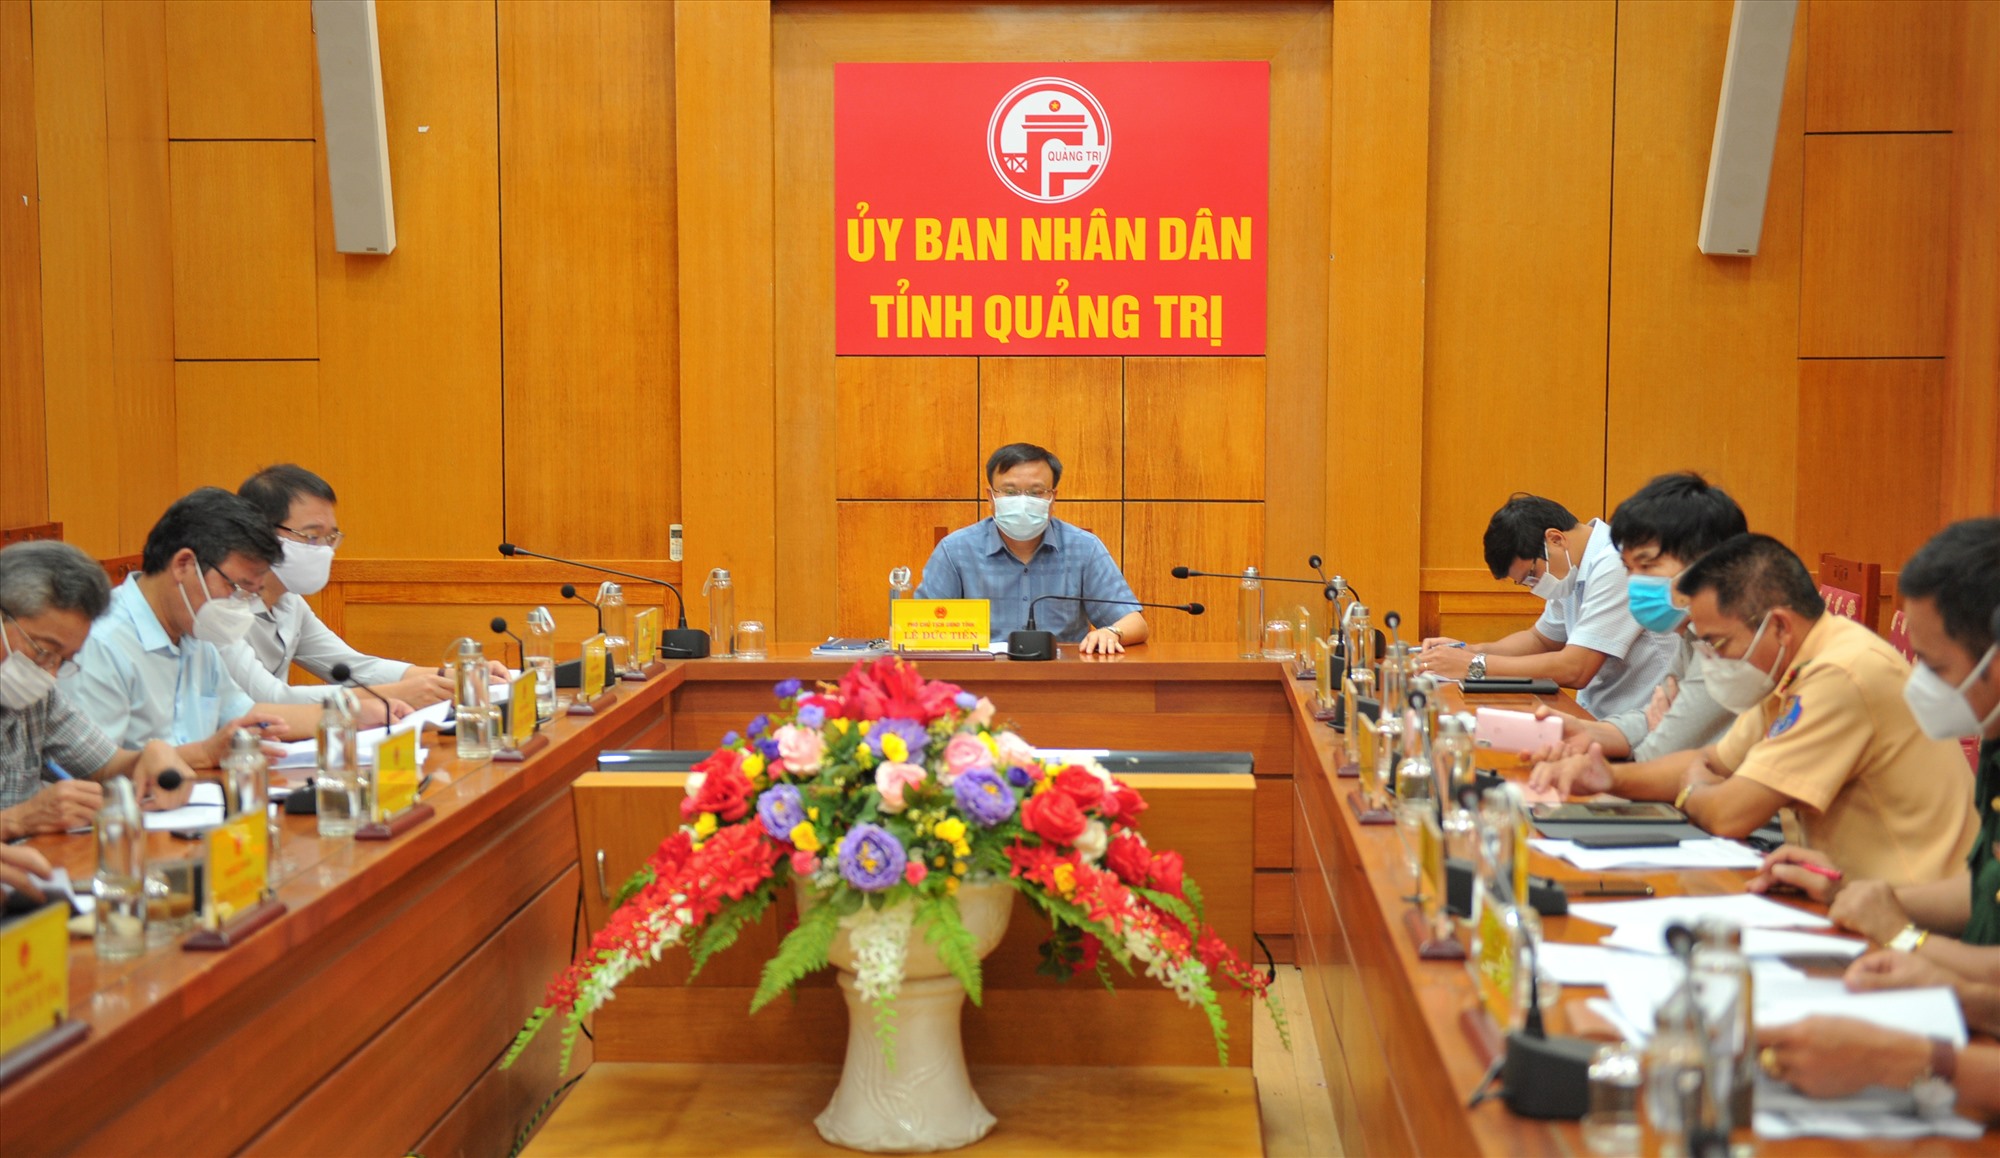 Phó Chủ tịch UBND tỉnh Lê Đức Tiến dự lễ công bố tại điểm cầu Quảng Trị - Ảnh: Trần Tuyền